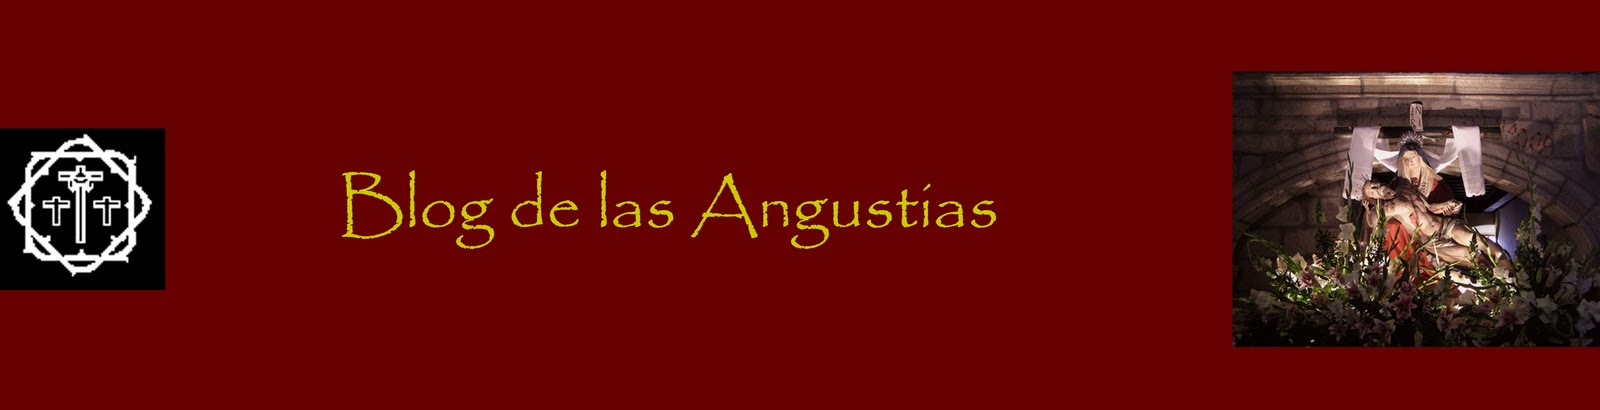 Blog de las Angustias